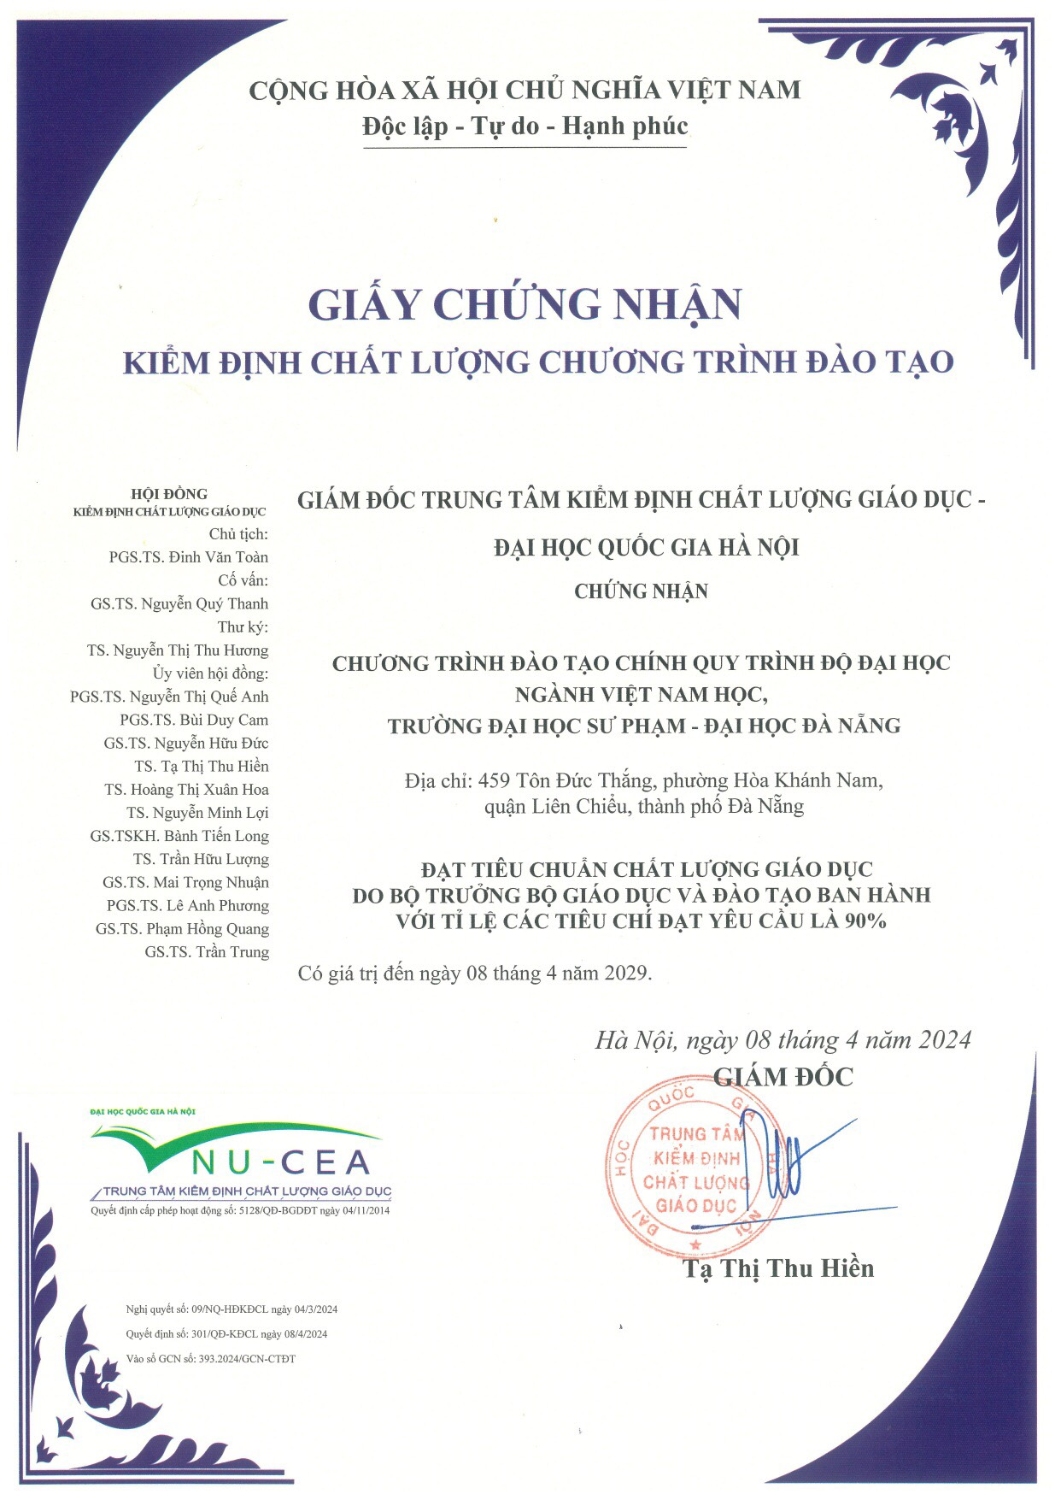 Chương trình đào tạo ngành Việt Nam học, Khoa Lịch sử, Trường Đại học Sư phạm - Đại học Đà Nẵng được cấp Giấy chứng nhận Kiểm định chất lượng giáo dục